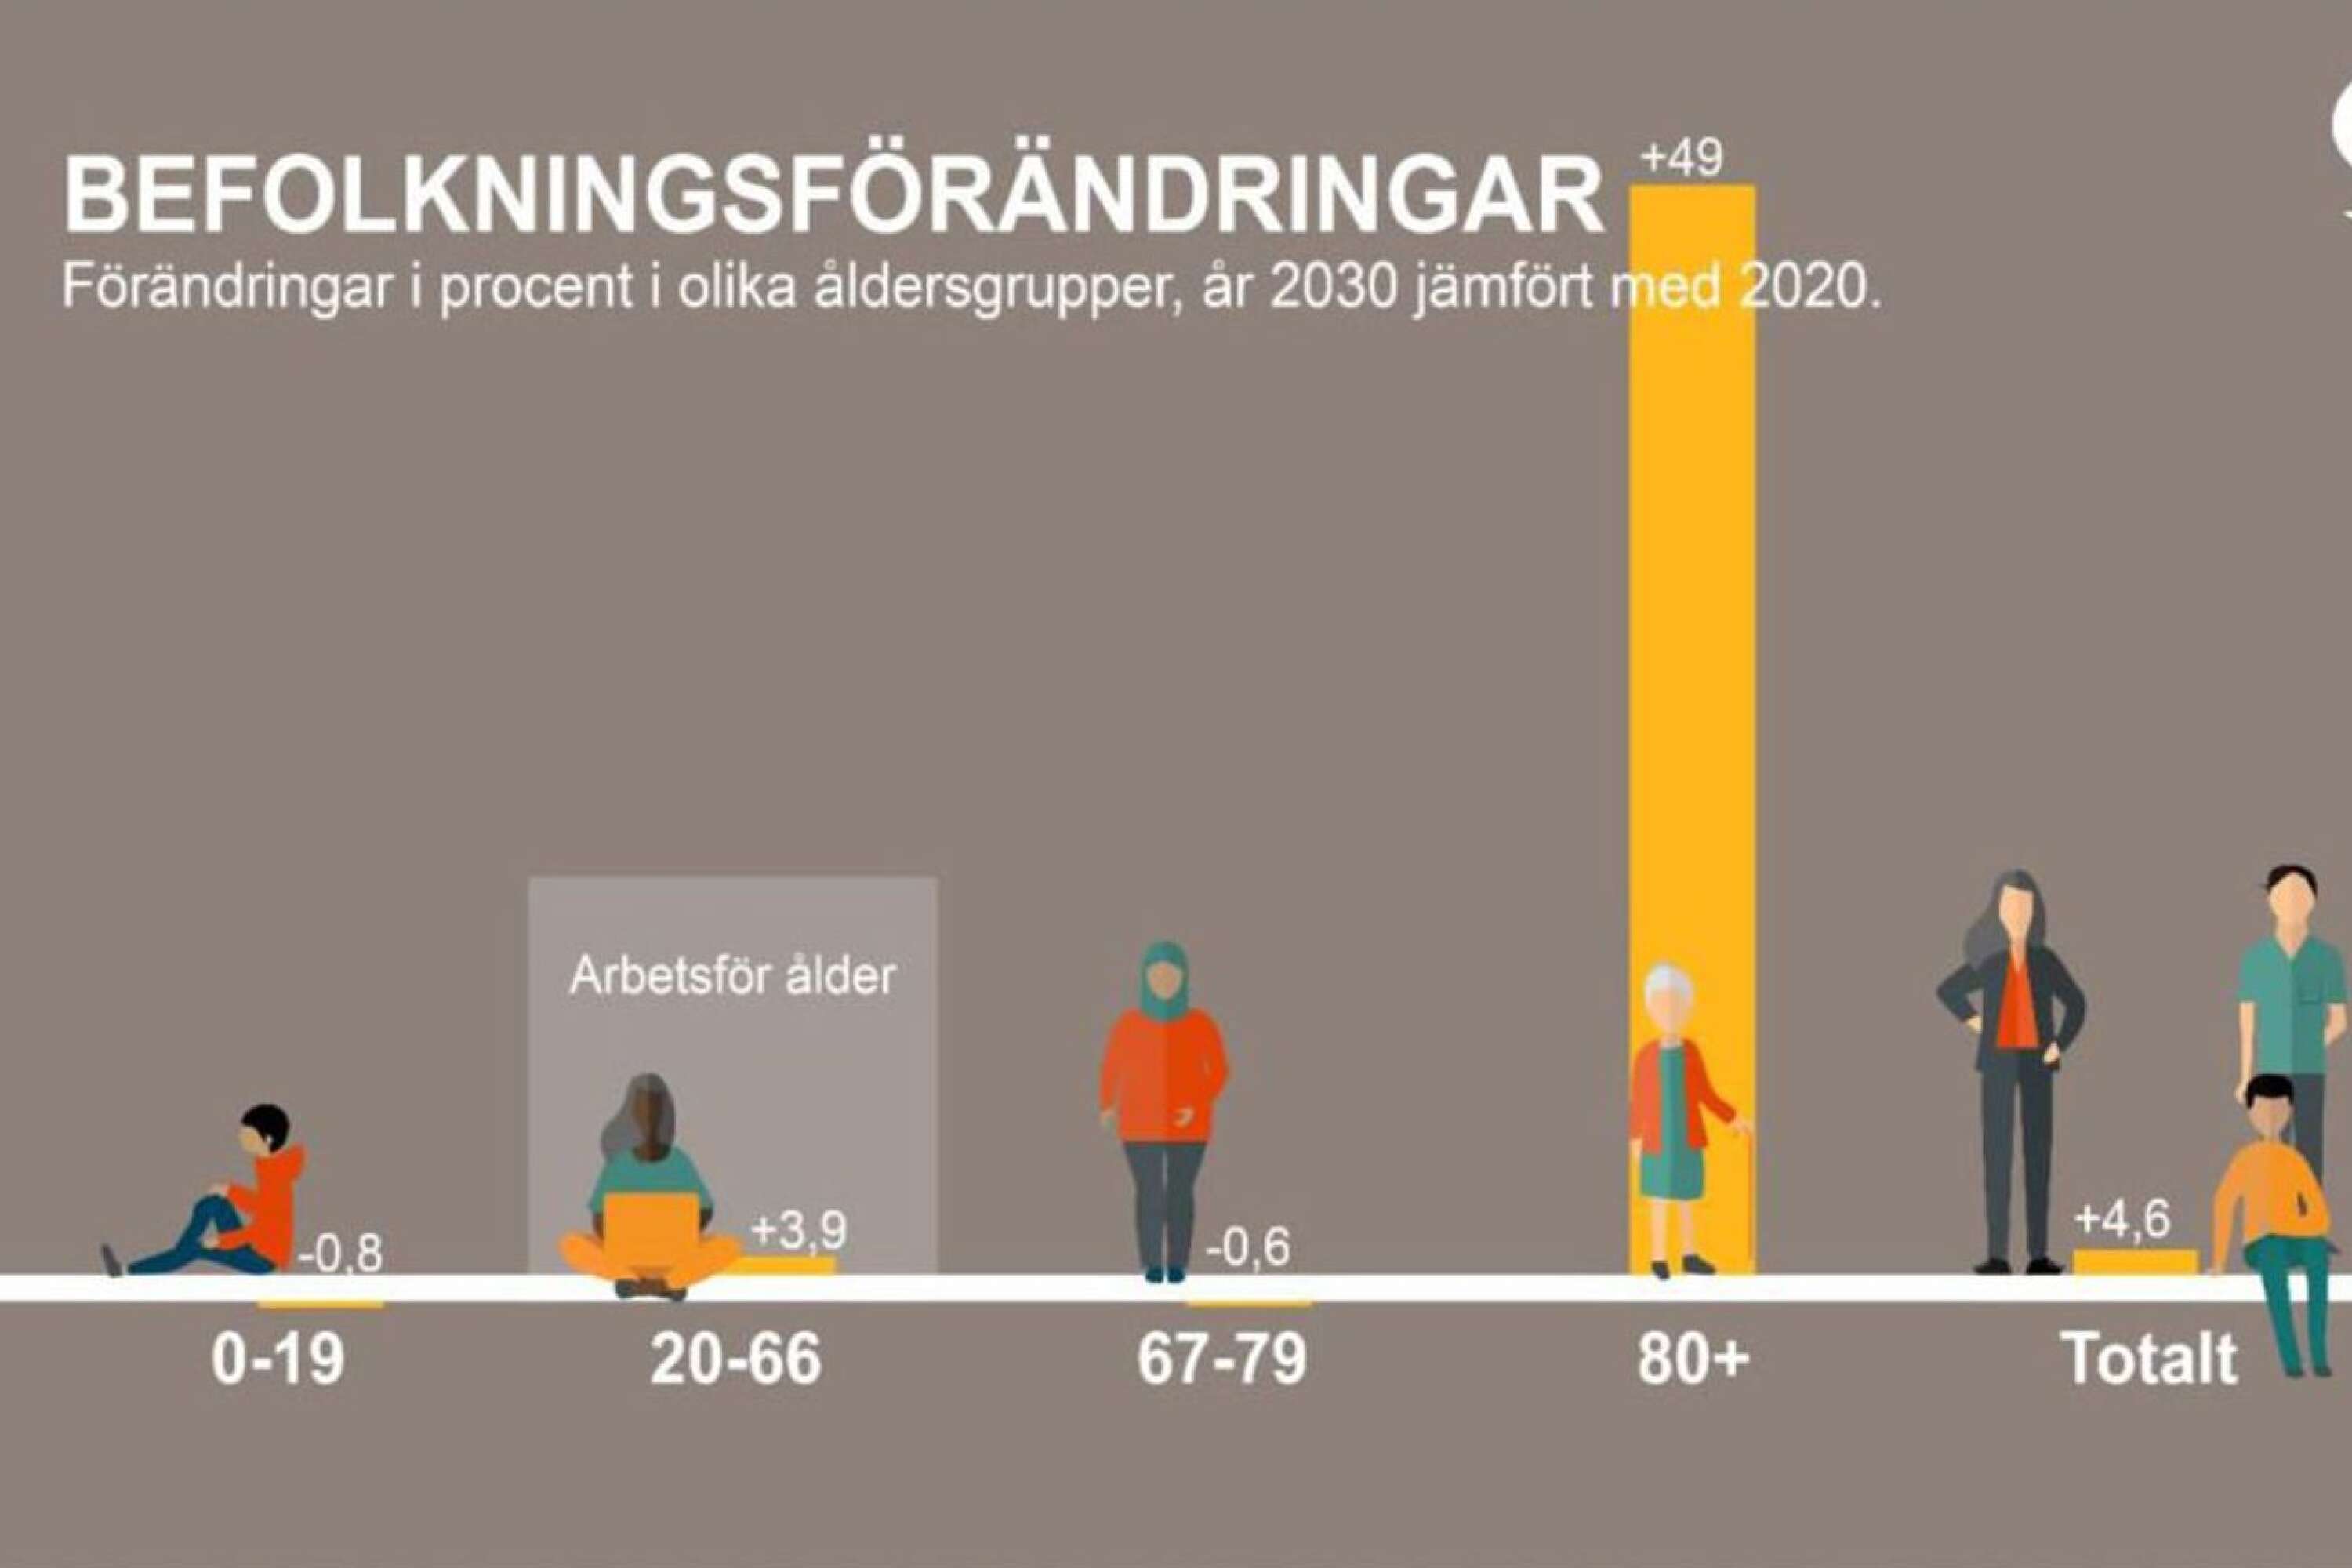 Gruppen 80 år och äldre ökar dramatiskt från 2020 till 2030. Bilden visar läget i landet i stort, men samma tendens gäller också för Töreboda. Källa: SKR